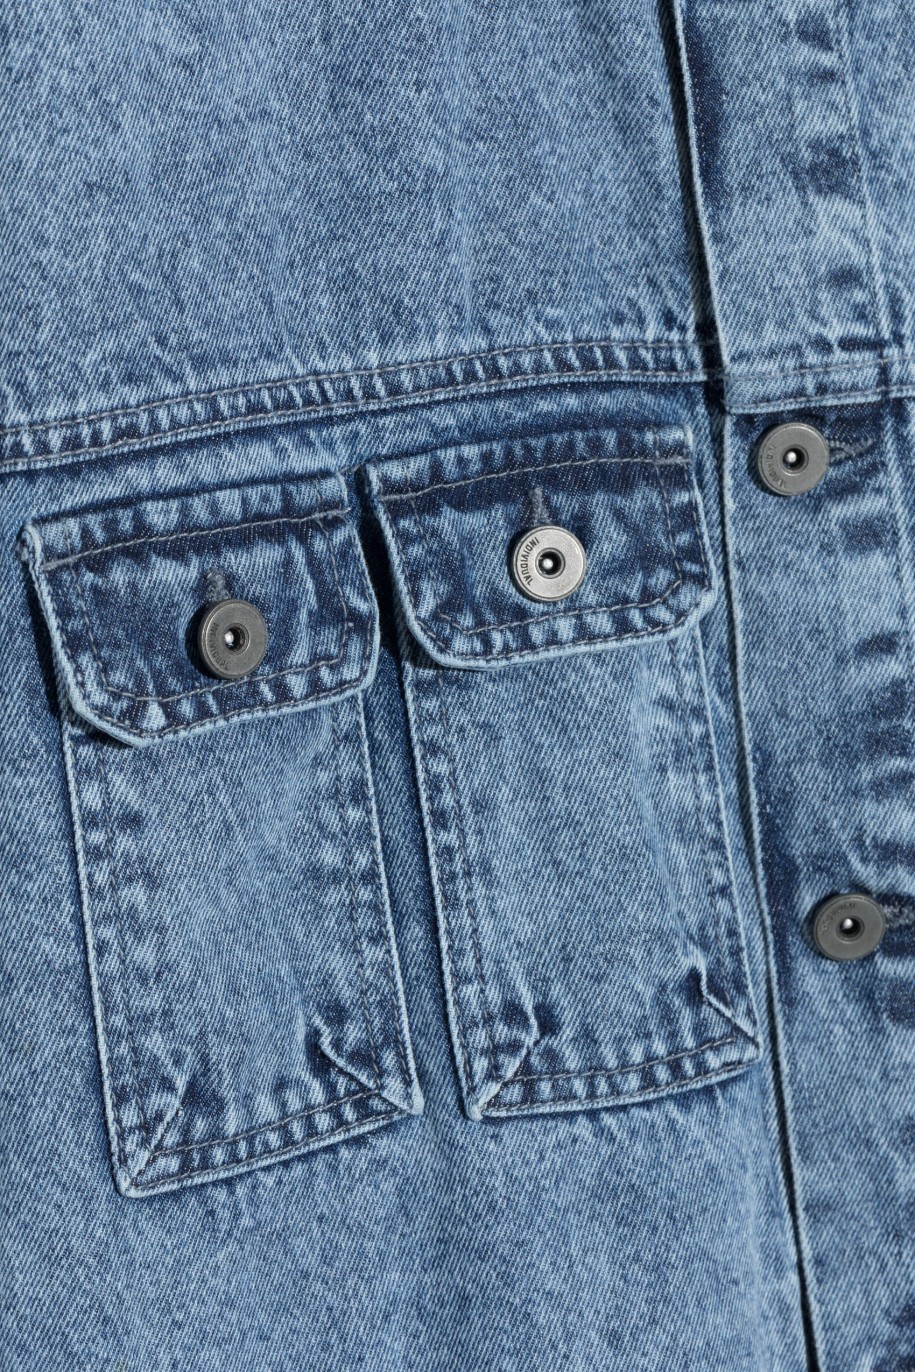 Niebieska kurtka jeansowa z graficznymi nadrukami - 47033